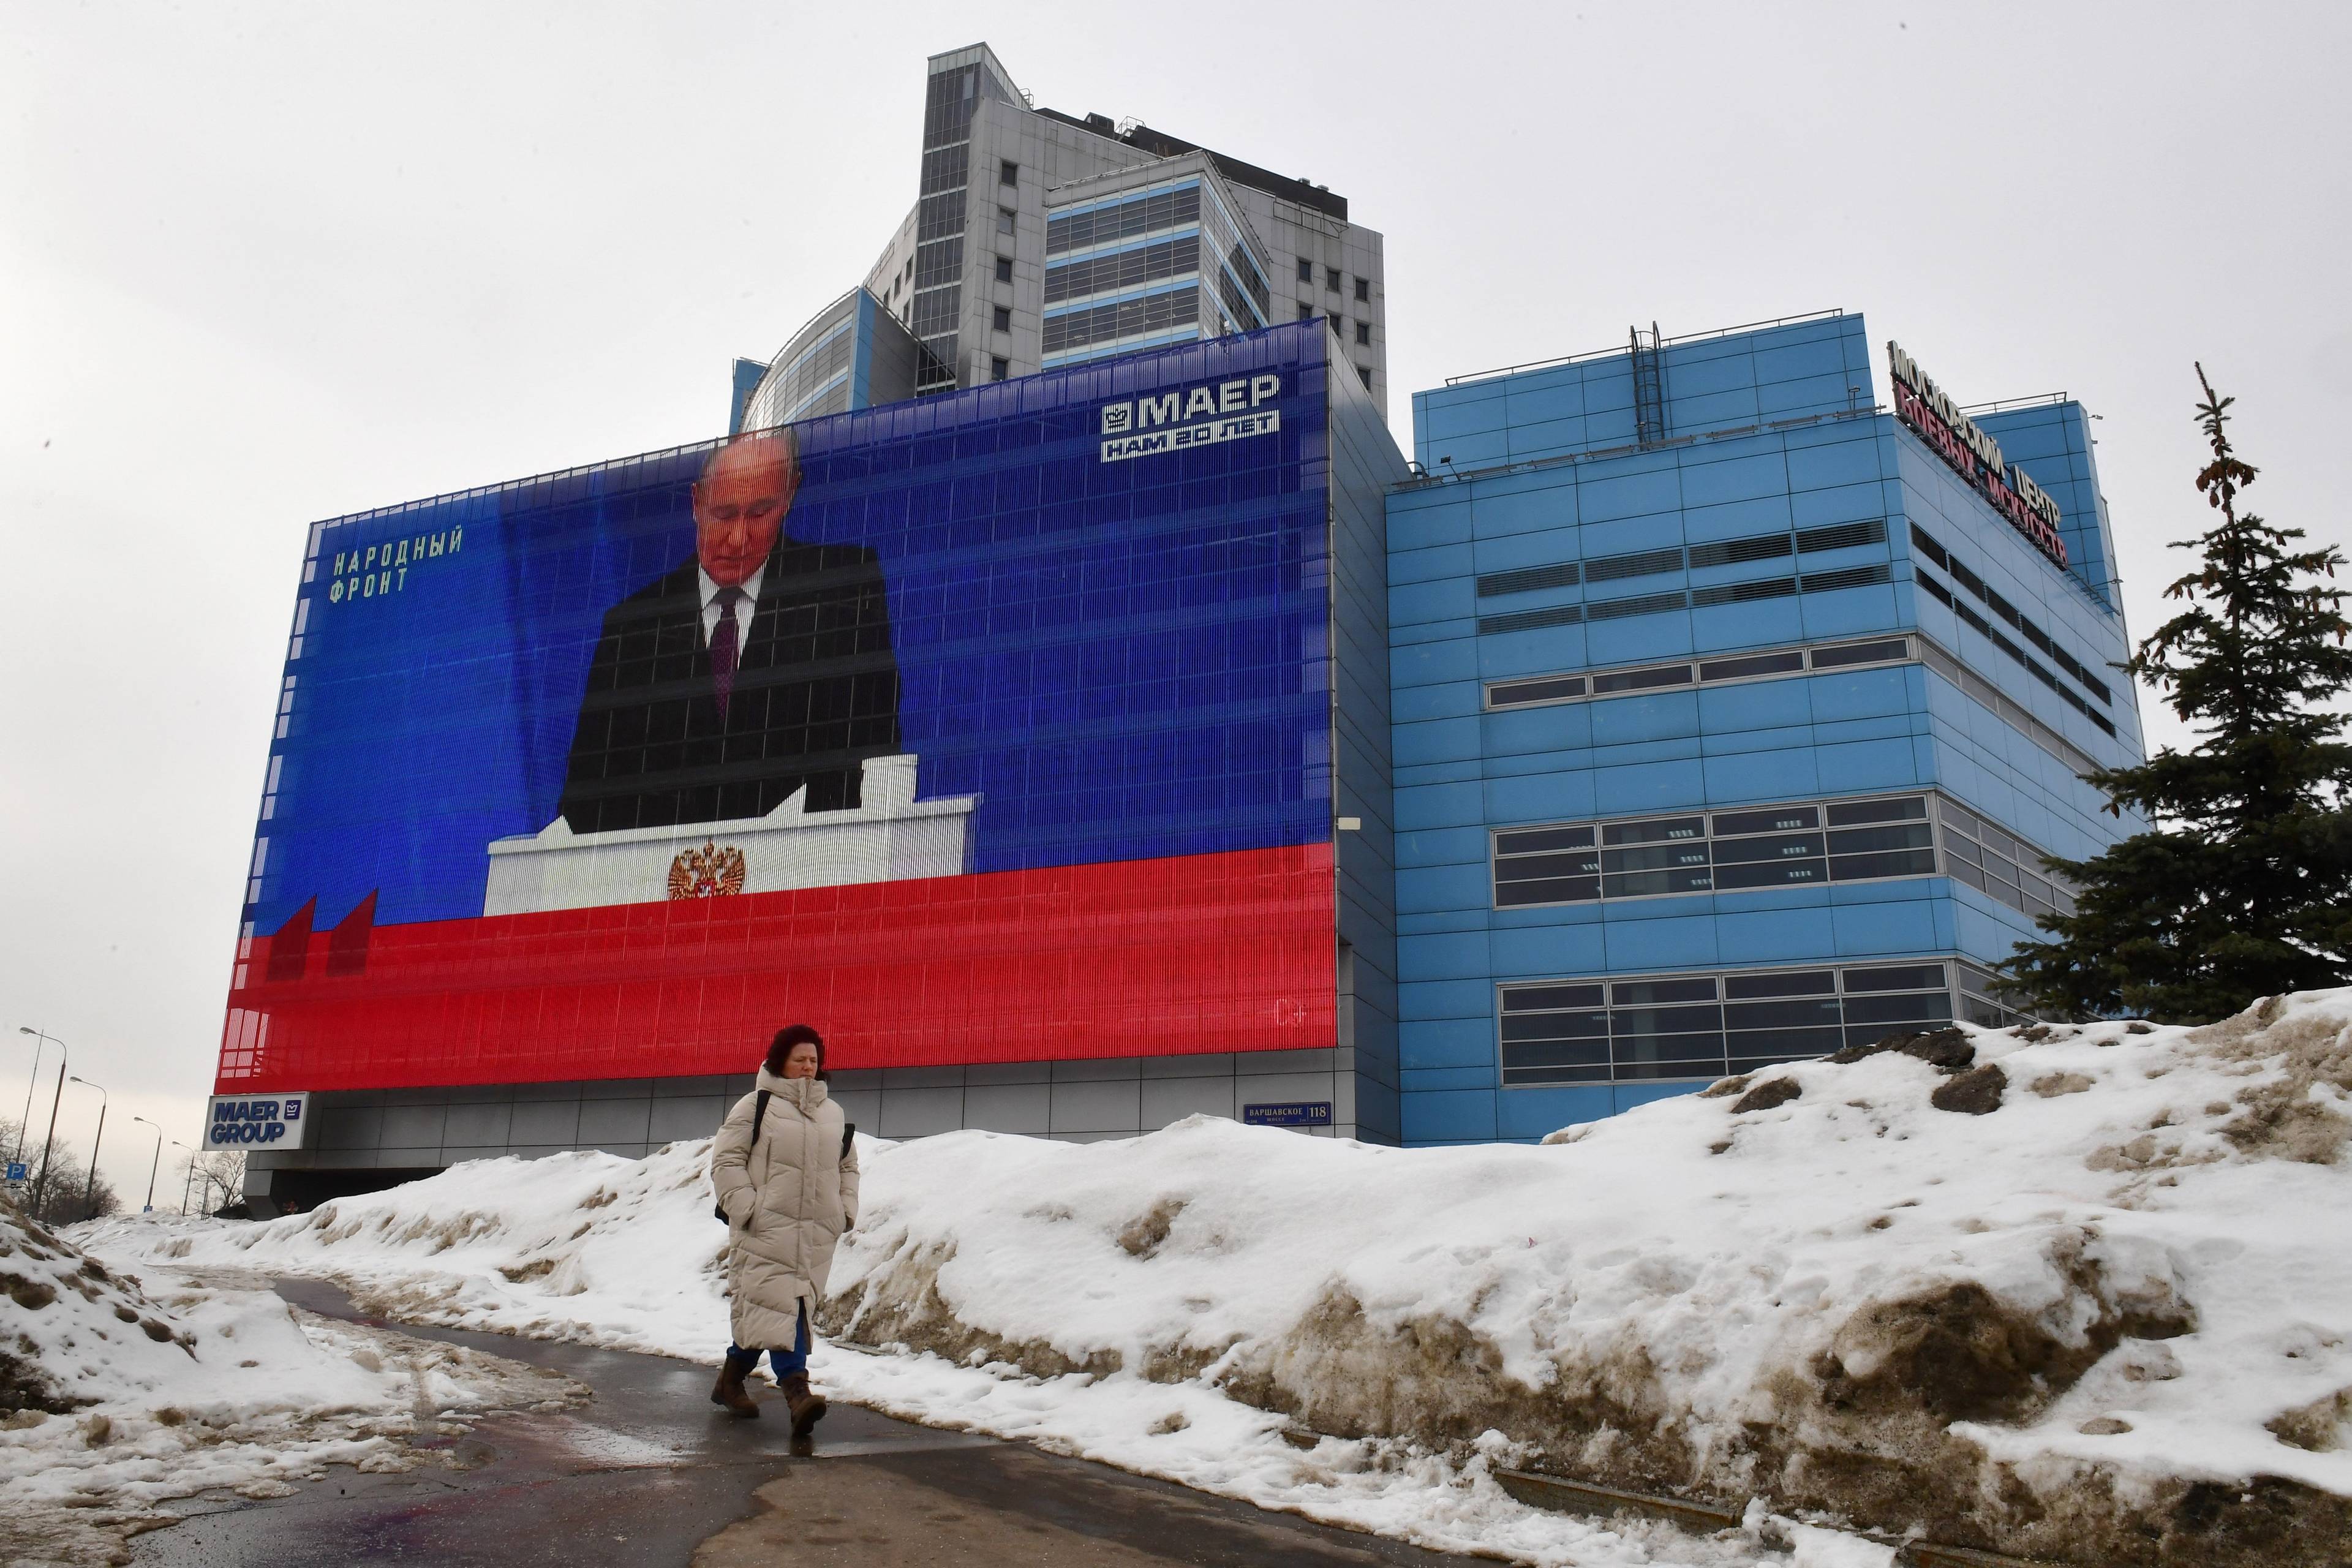 Orędzie Putina wyświetlane na wielkim ekranie na budynku przy zaśnieżonej ulicy, kobieta, która idzie odwrócona do tego plecami